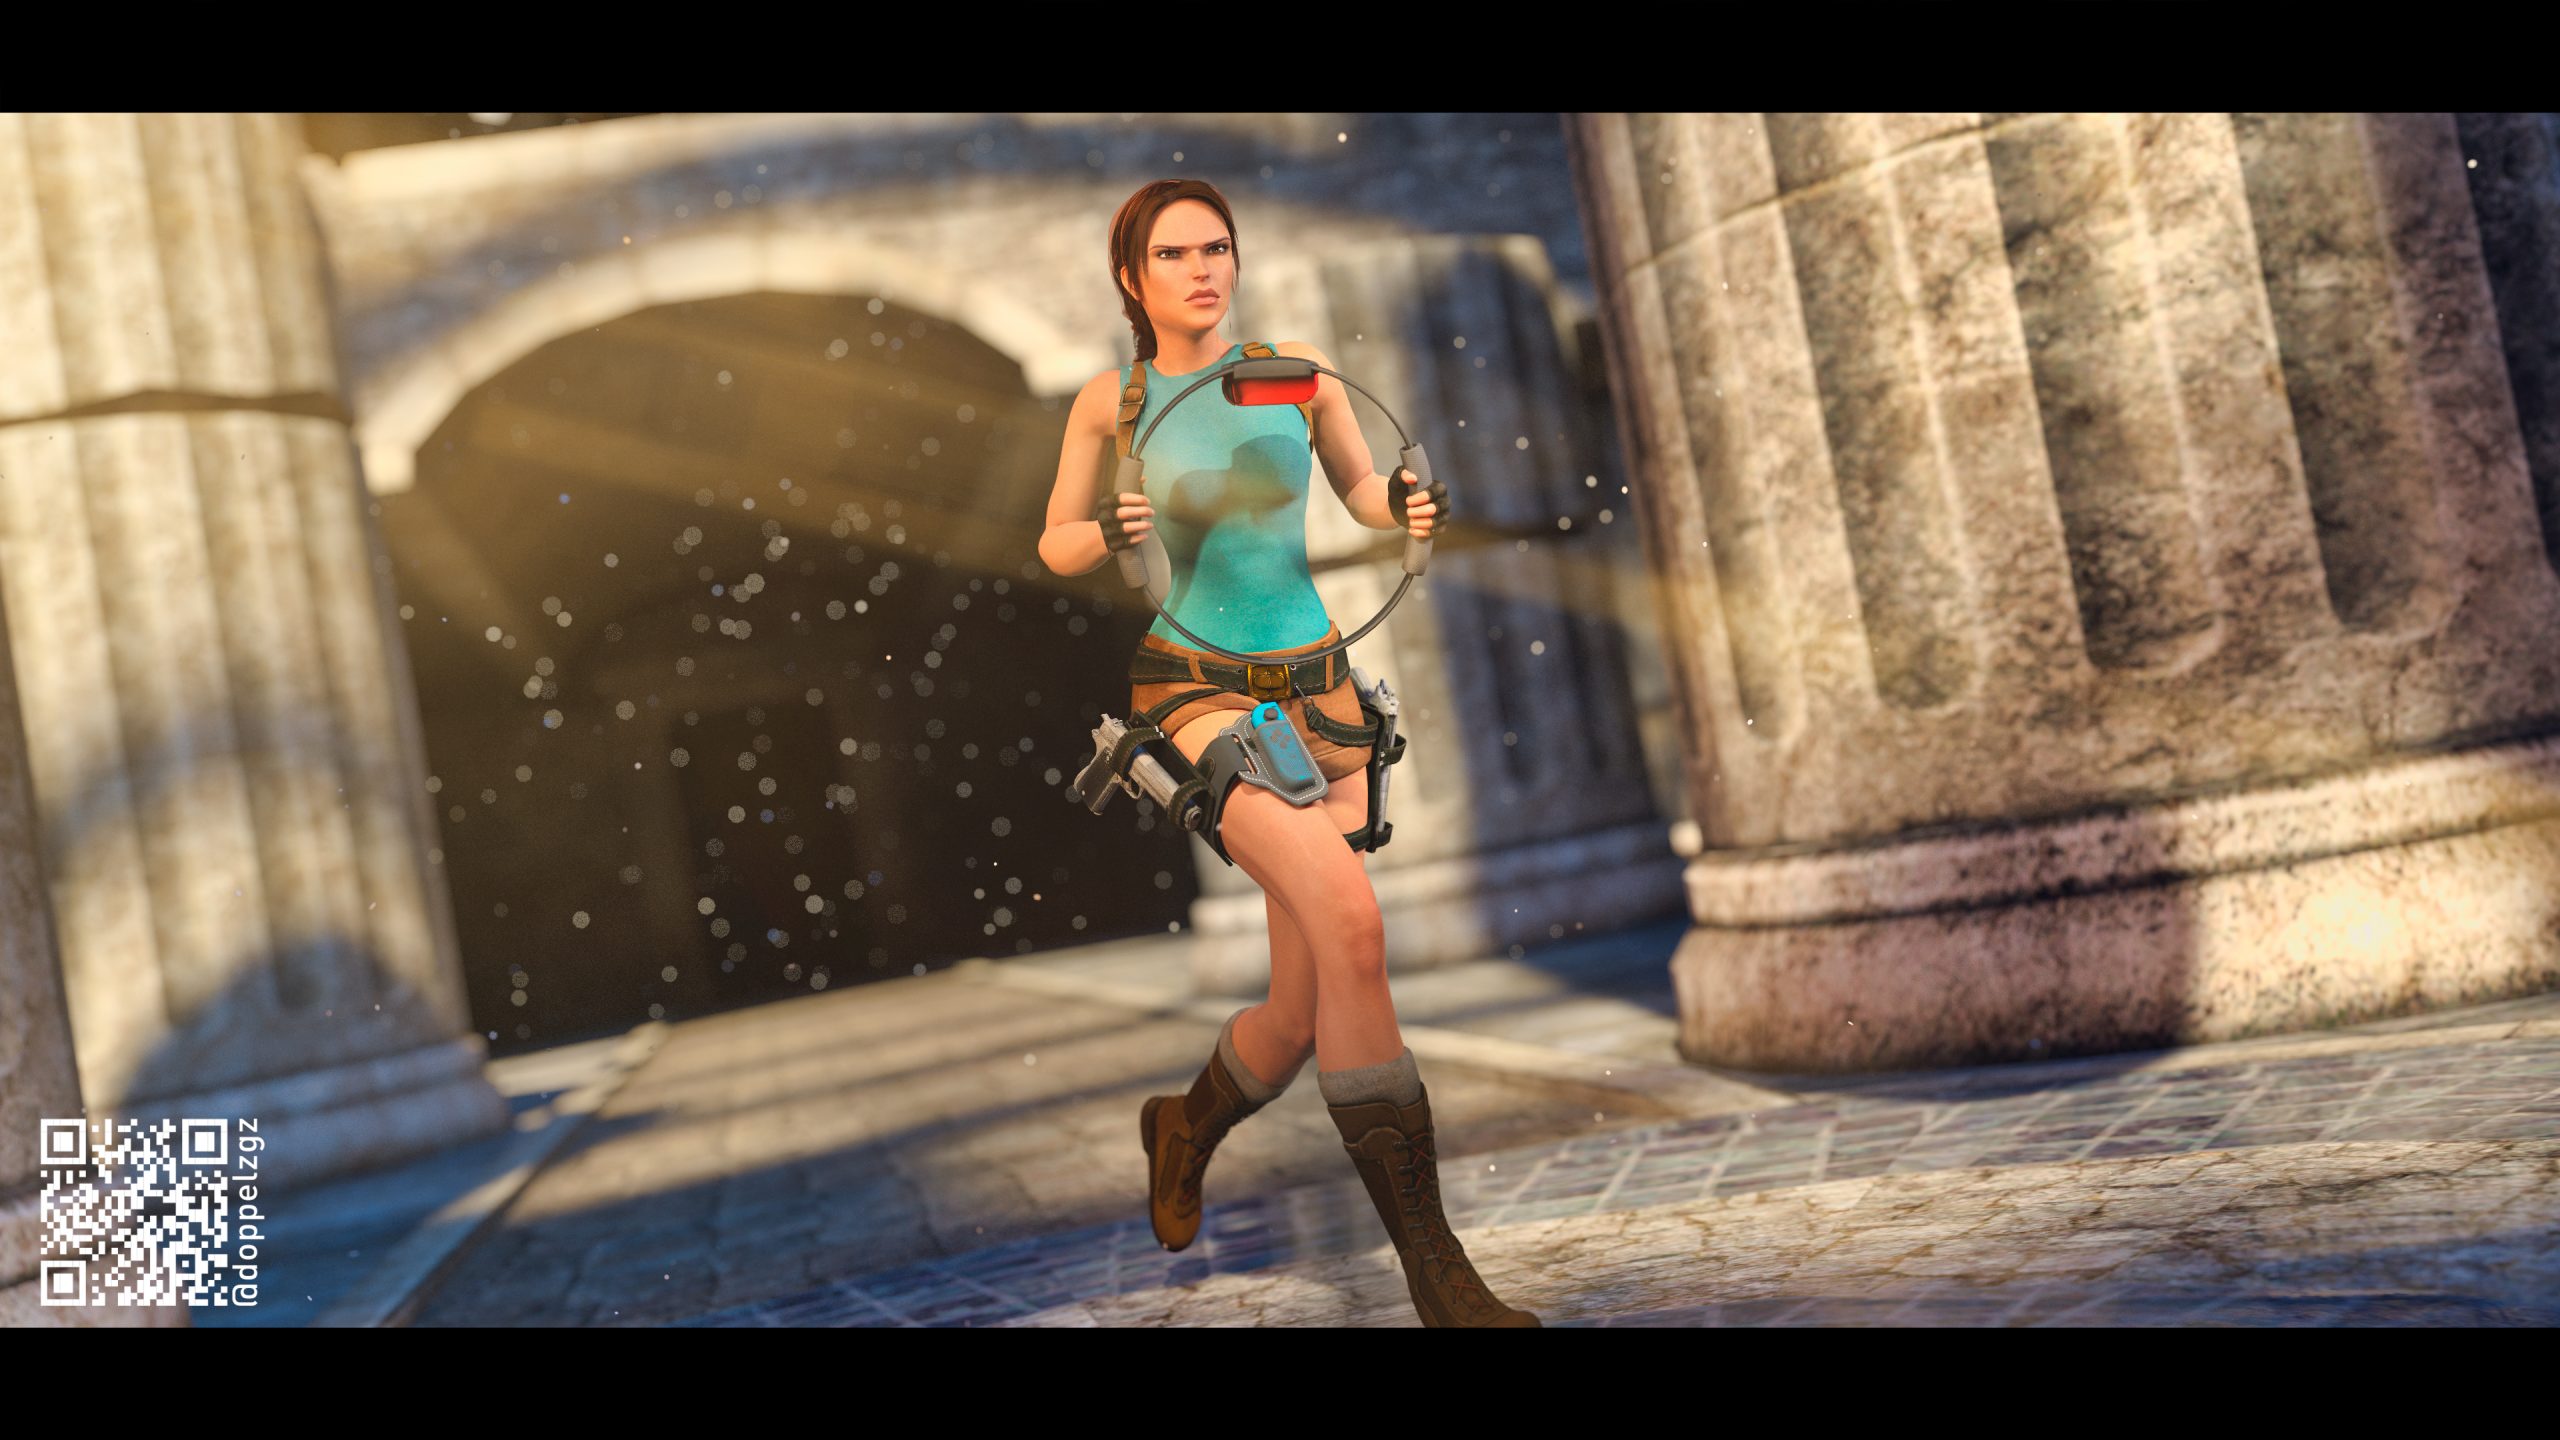 Lara Croft Corriendo con Ring Con, el periferico utilizado para jugar a Ring FIt Adventure